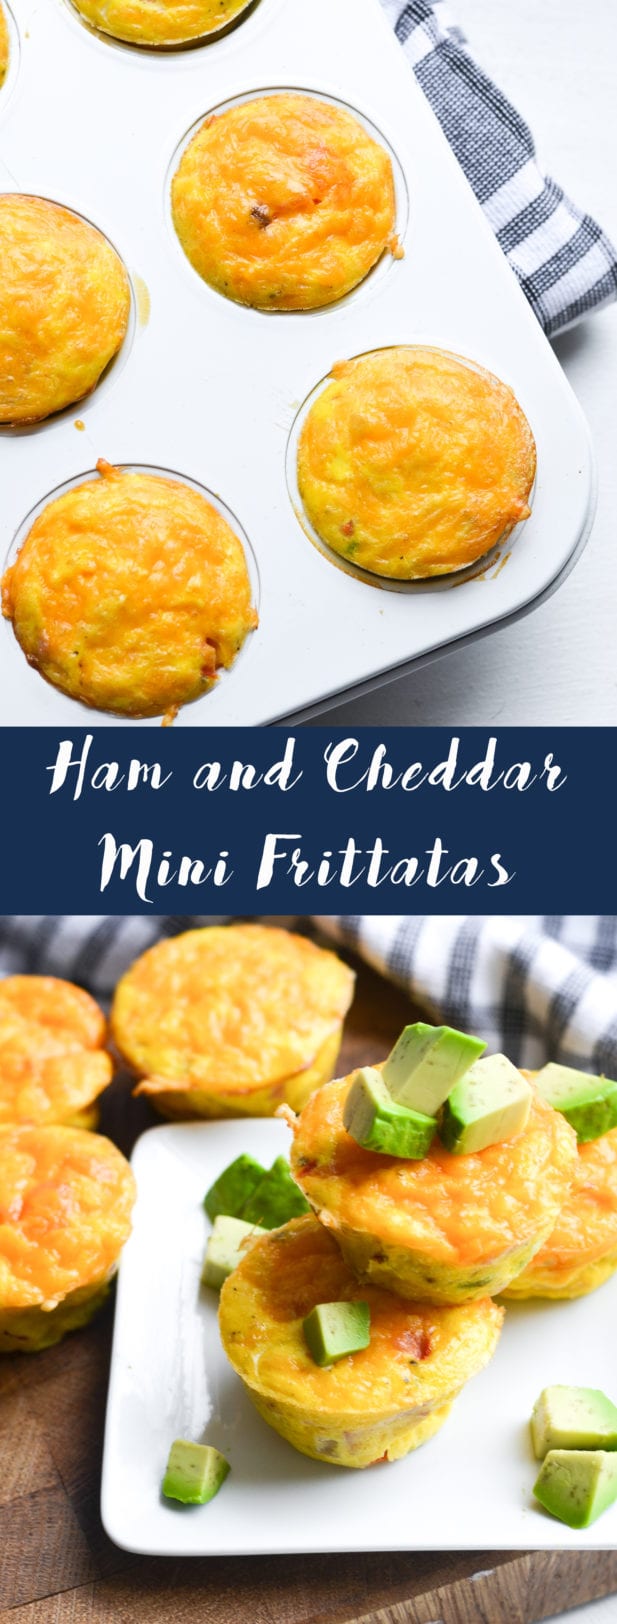 Ham and Cheddar Mini Frittatas